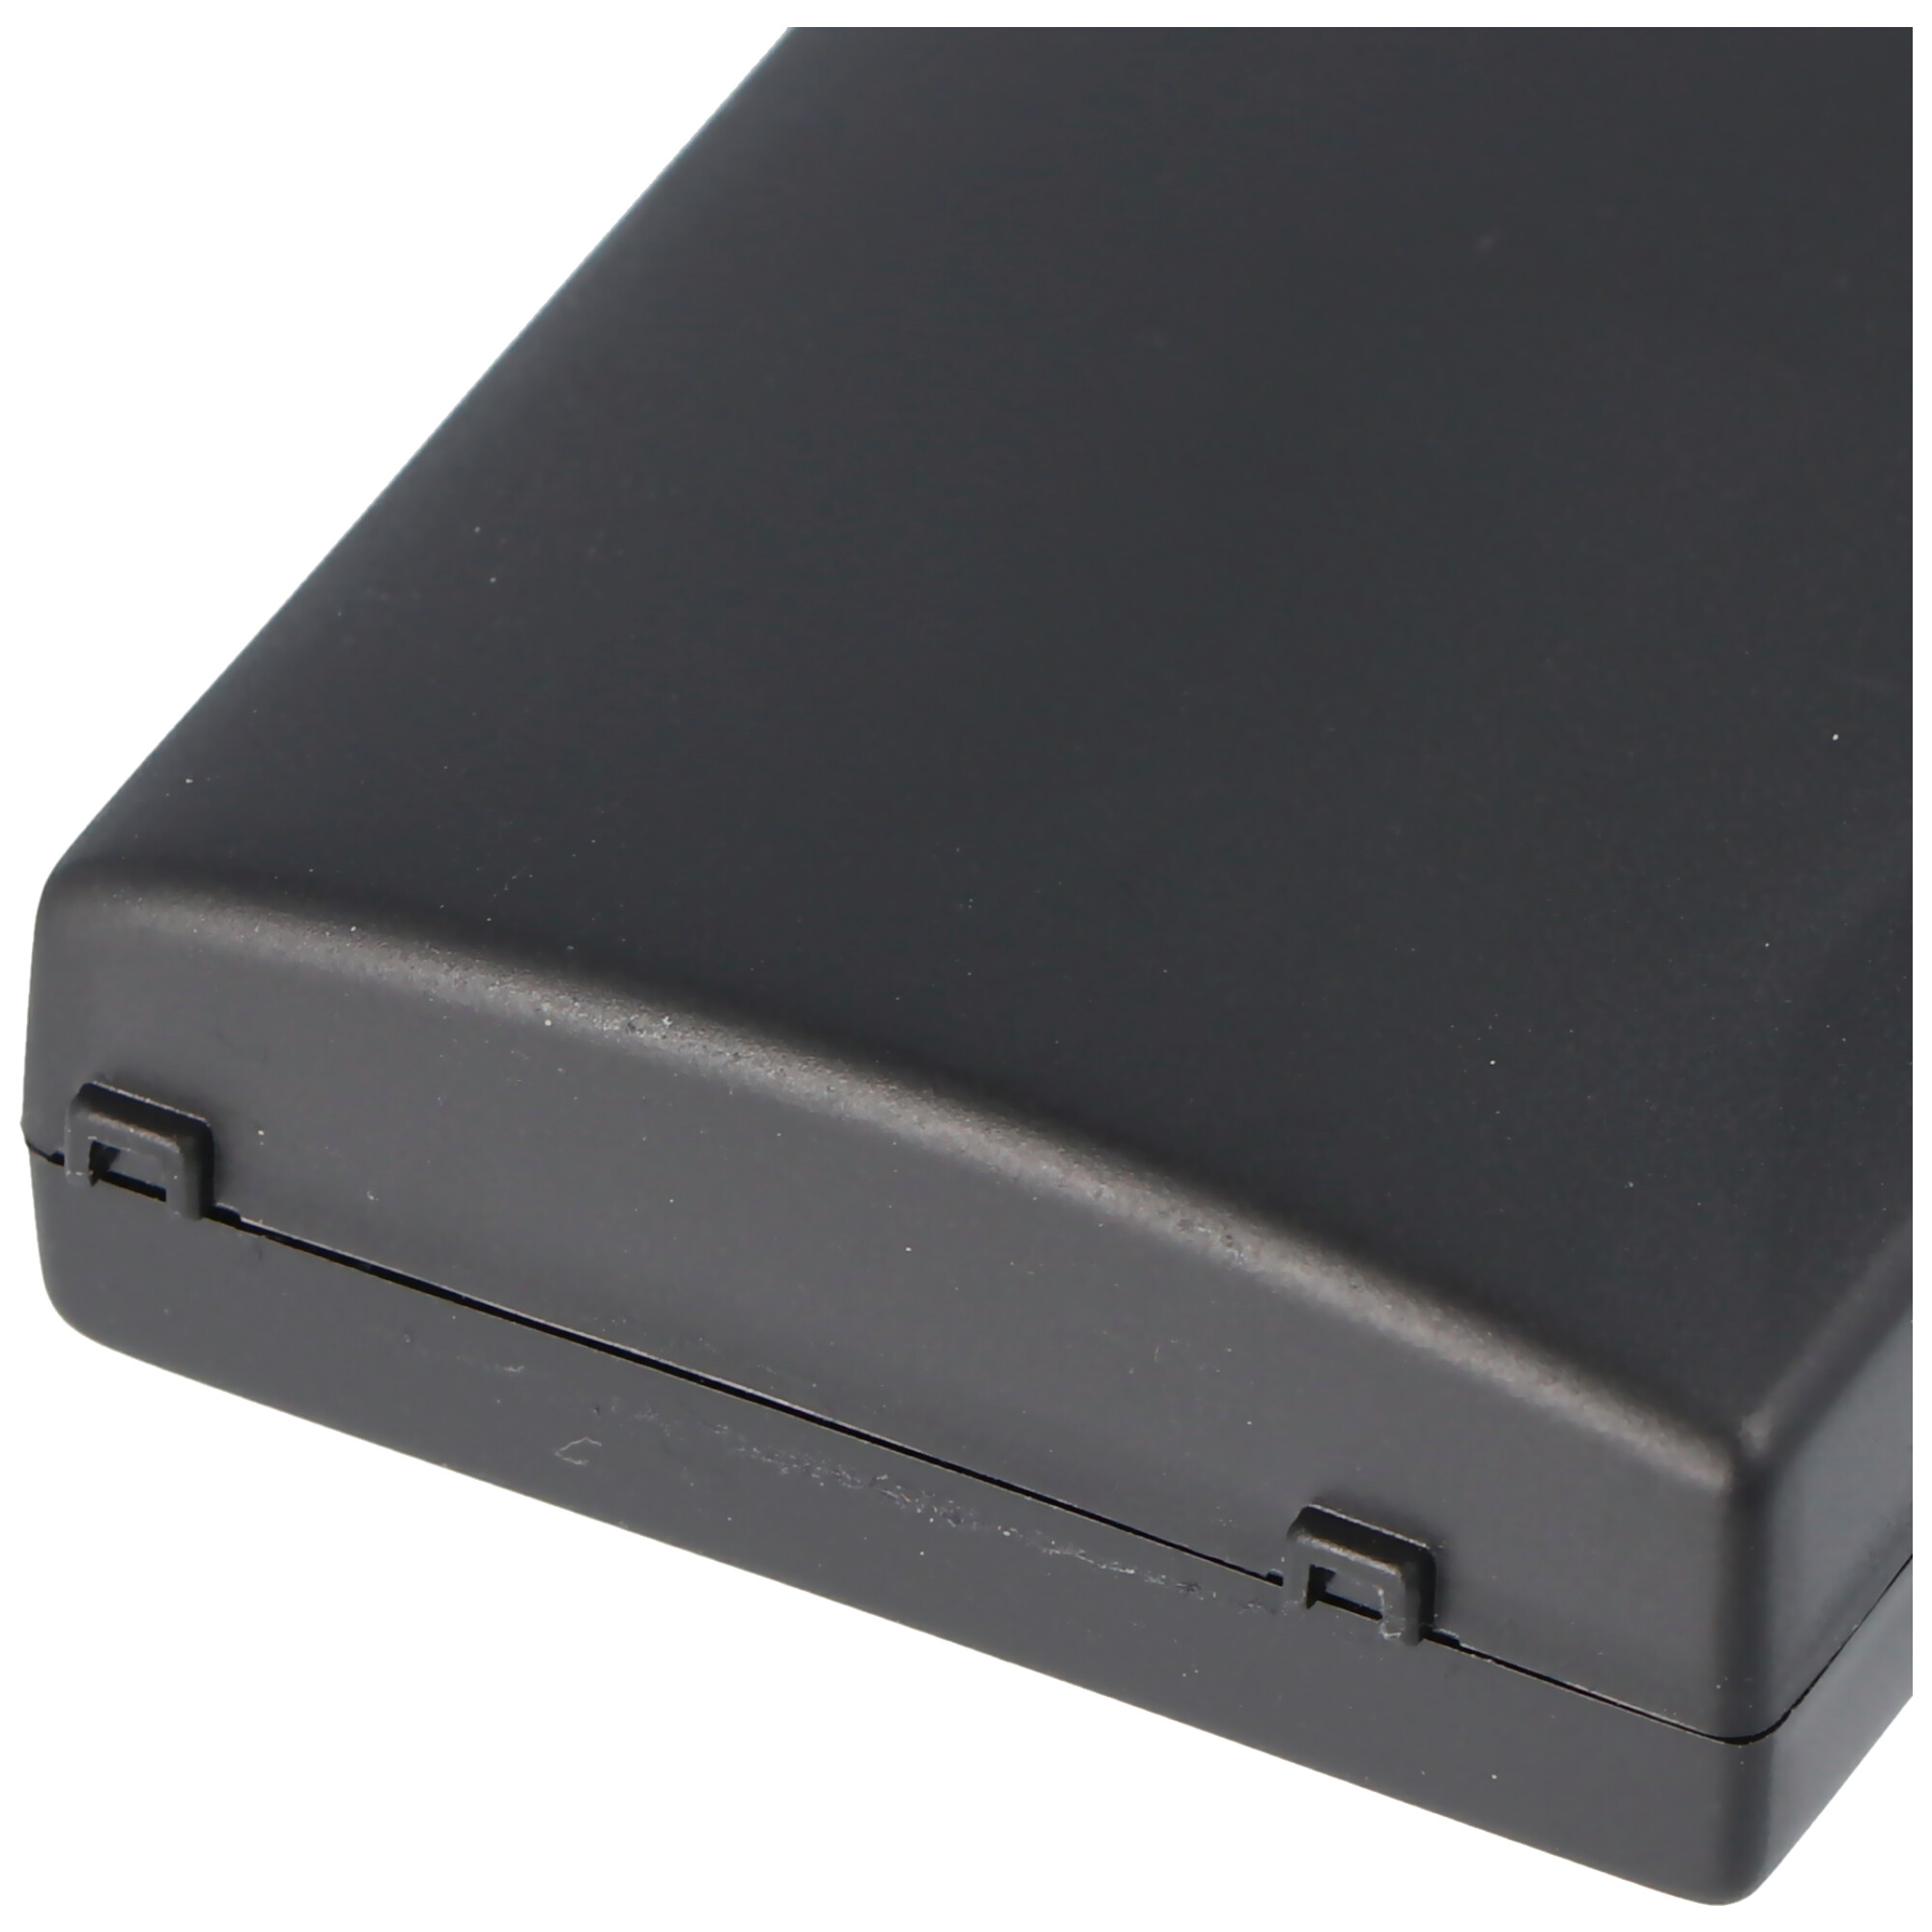 Li-Ion-Akku 1800mAh 3.7V für Spielkonsole wie Sony PSP-110, PSP-280G